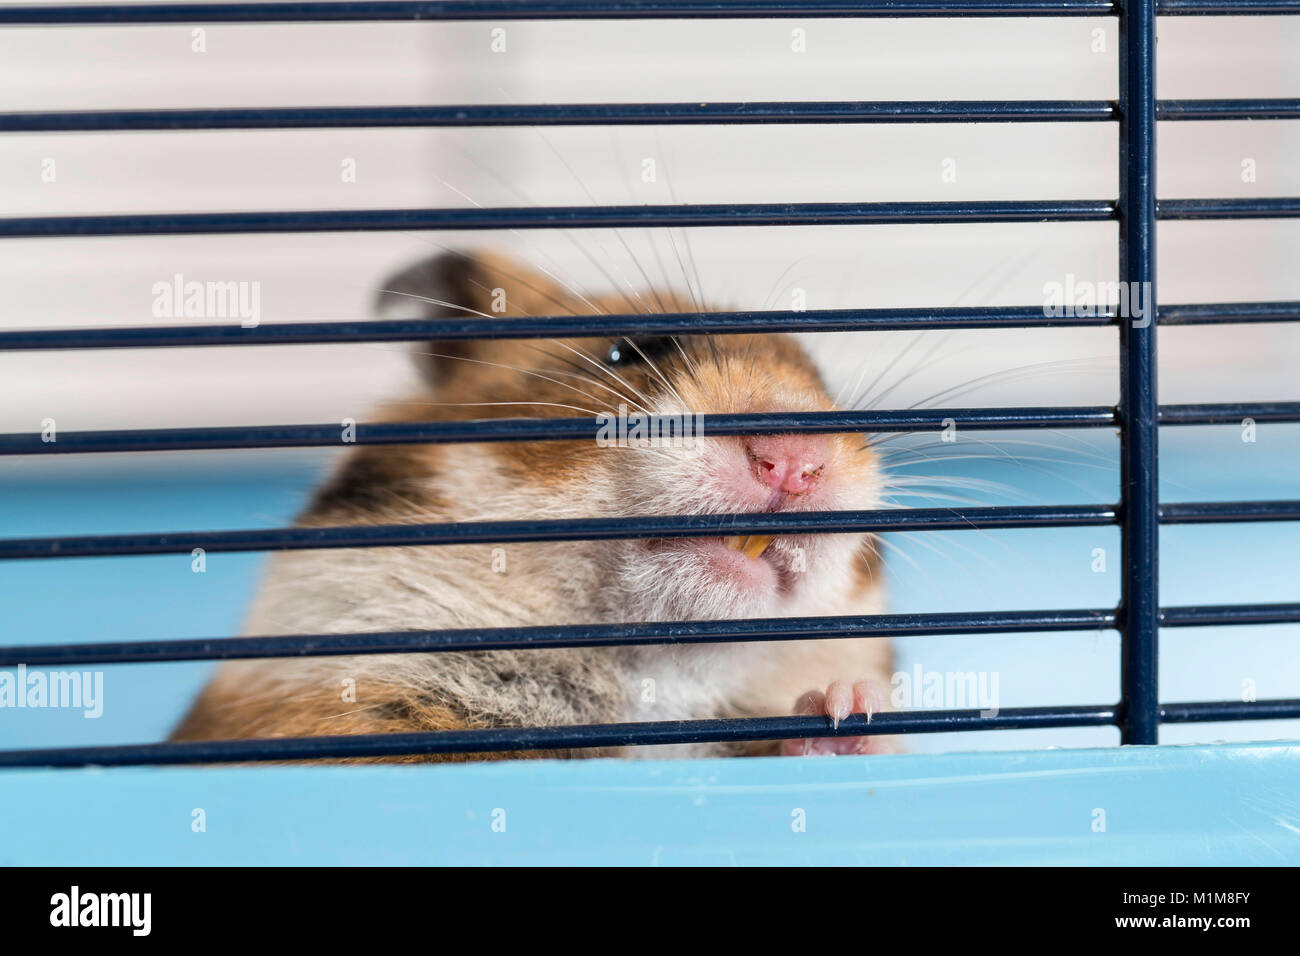 Animal Hamster doré rongeant sur les barreaux de sa cage. Allemagne Banque D'Images